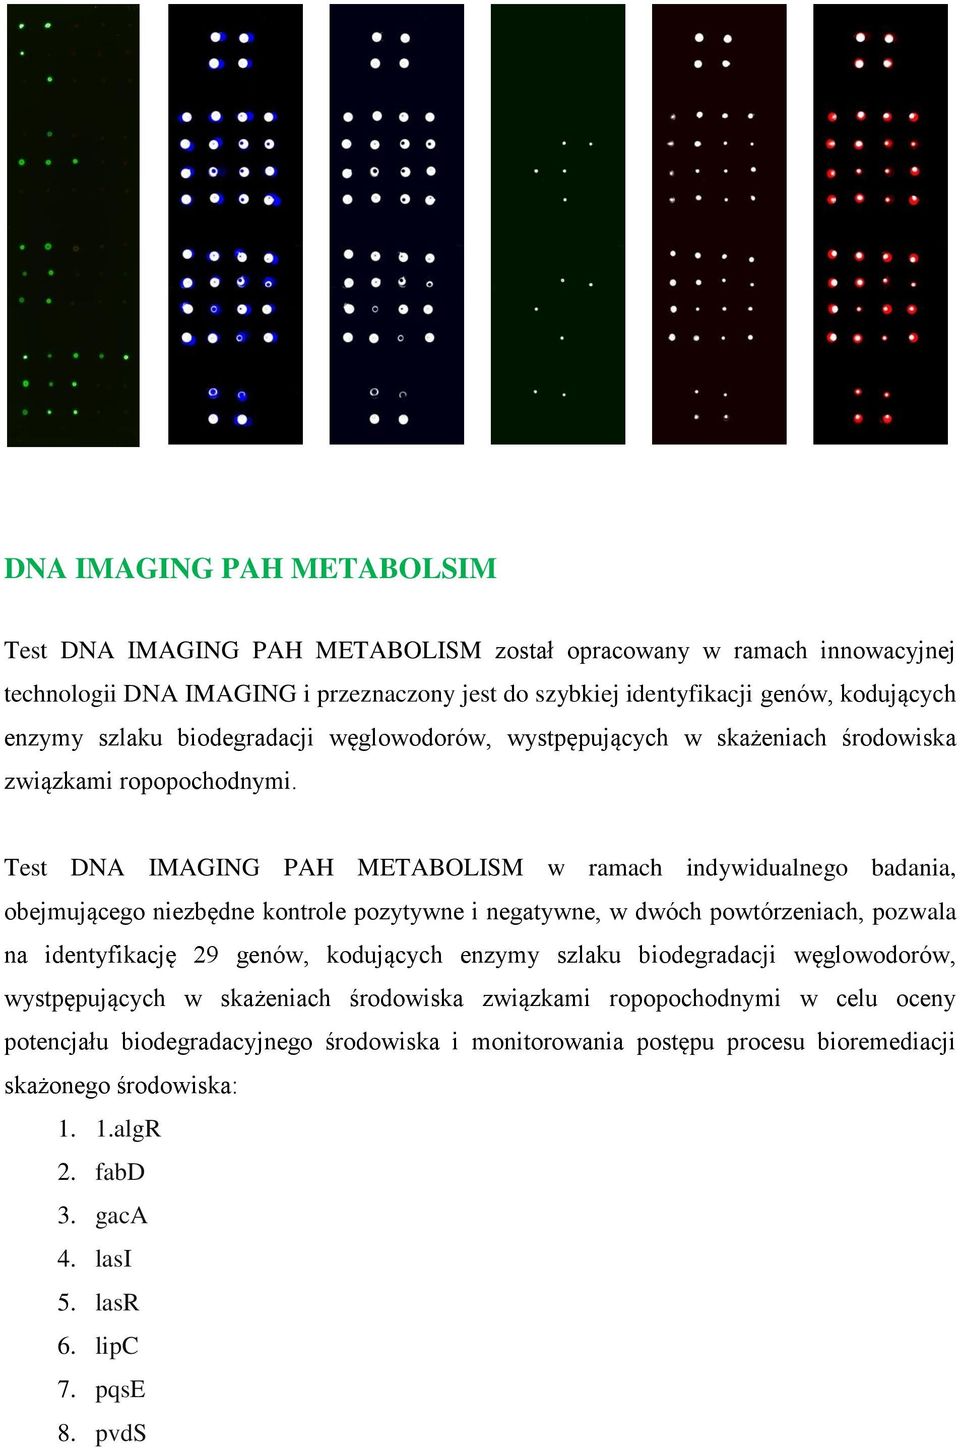 Test DNA IMAGING PAH METABOLISM w ramach indywidualnego badania, obejmującego niezbędne kontrole pozytywne i negatywne, w dwóch powtórzeniach, pozwala na identyfikację 29 genów, kodujących